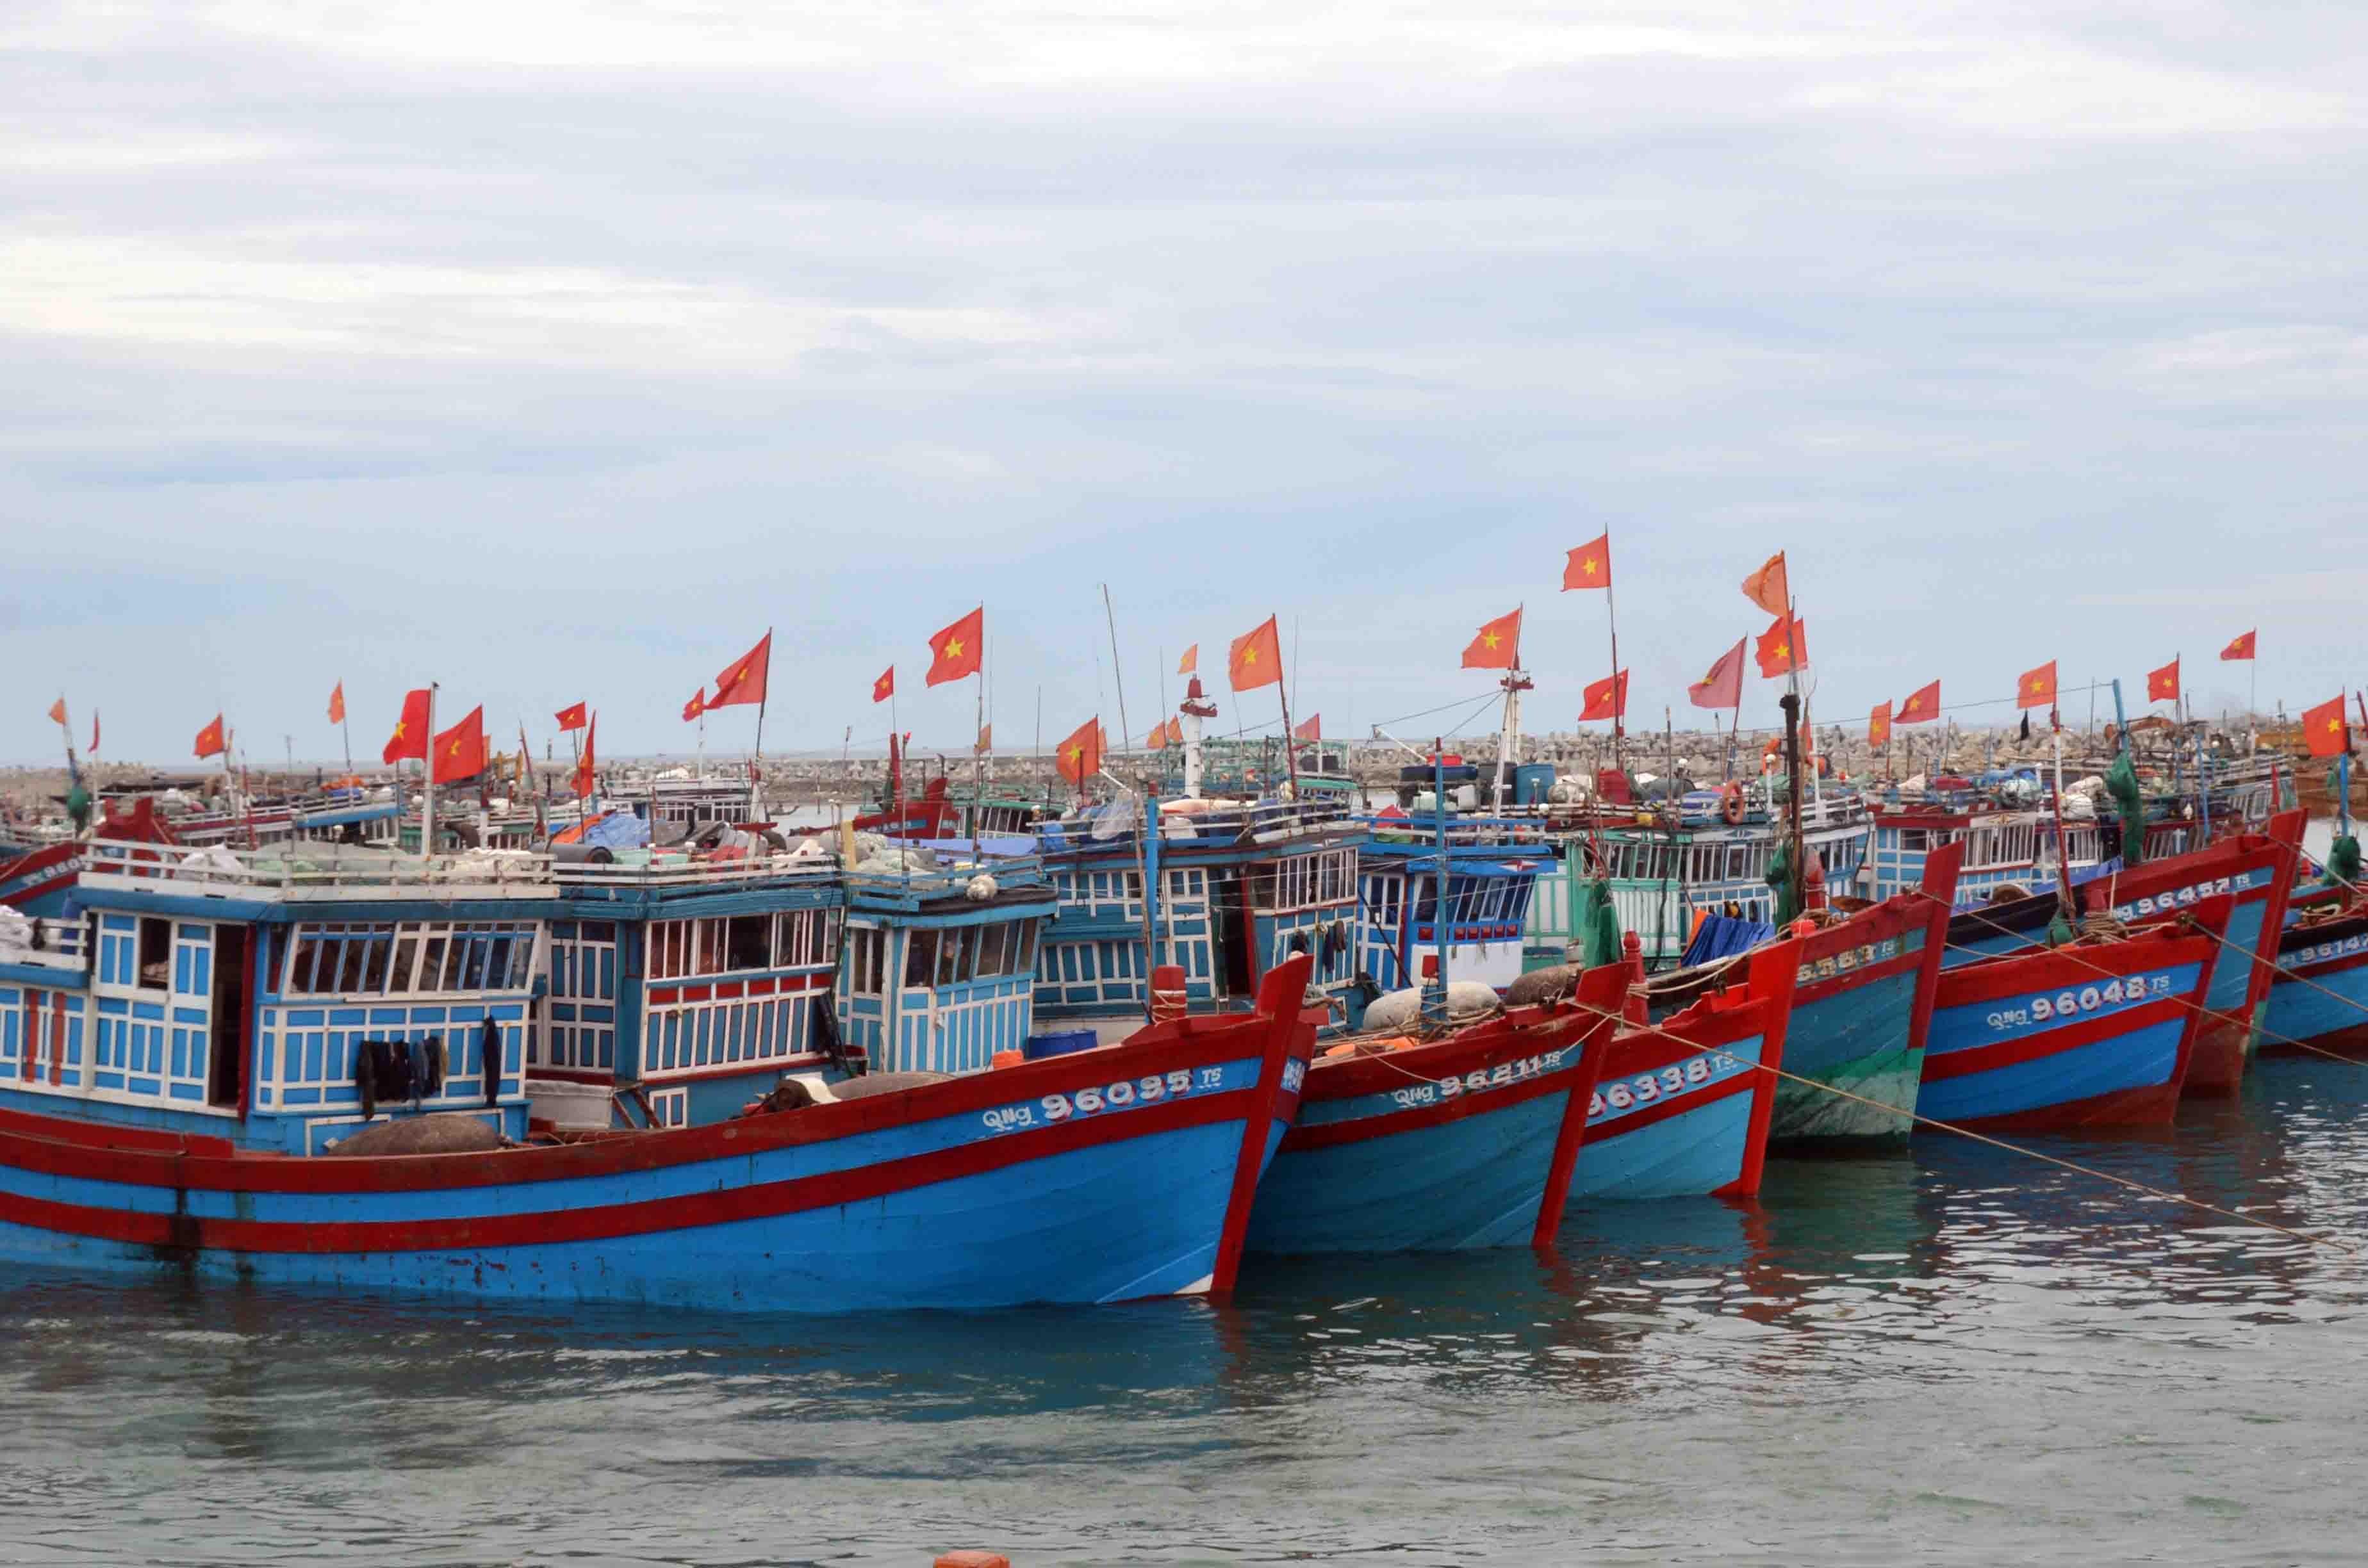 Đã trải qua 4 lần kiểm tra quy trình thực hiện chống khai thác bất hợp pháp của châu Âu, Việt Nam vẫn quyết tâm làm tốt để đưa ngành khai thác, đánh bắt hải sản phát triển bền vững.